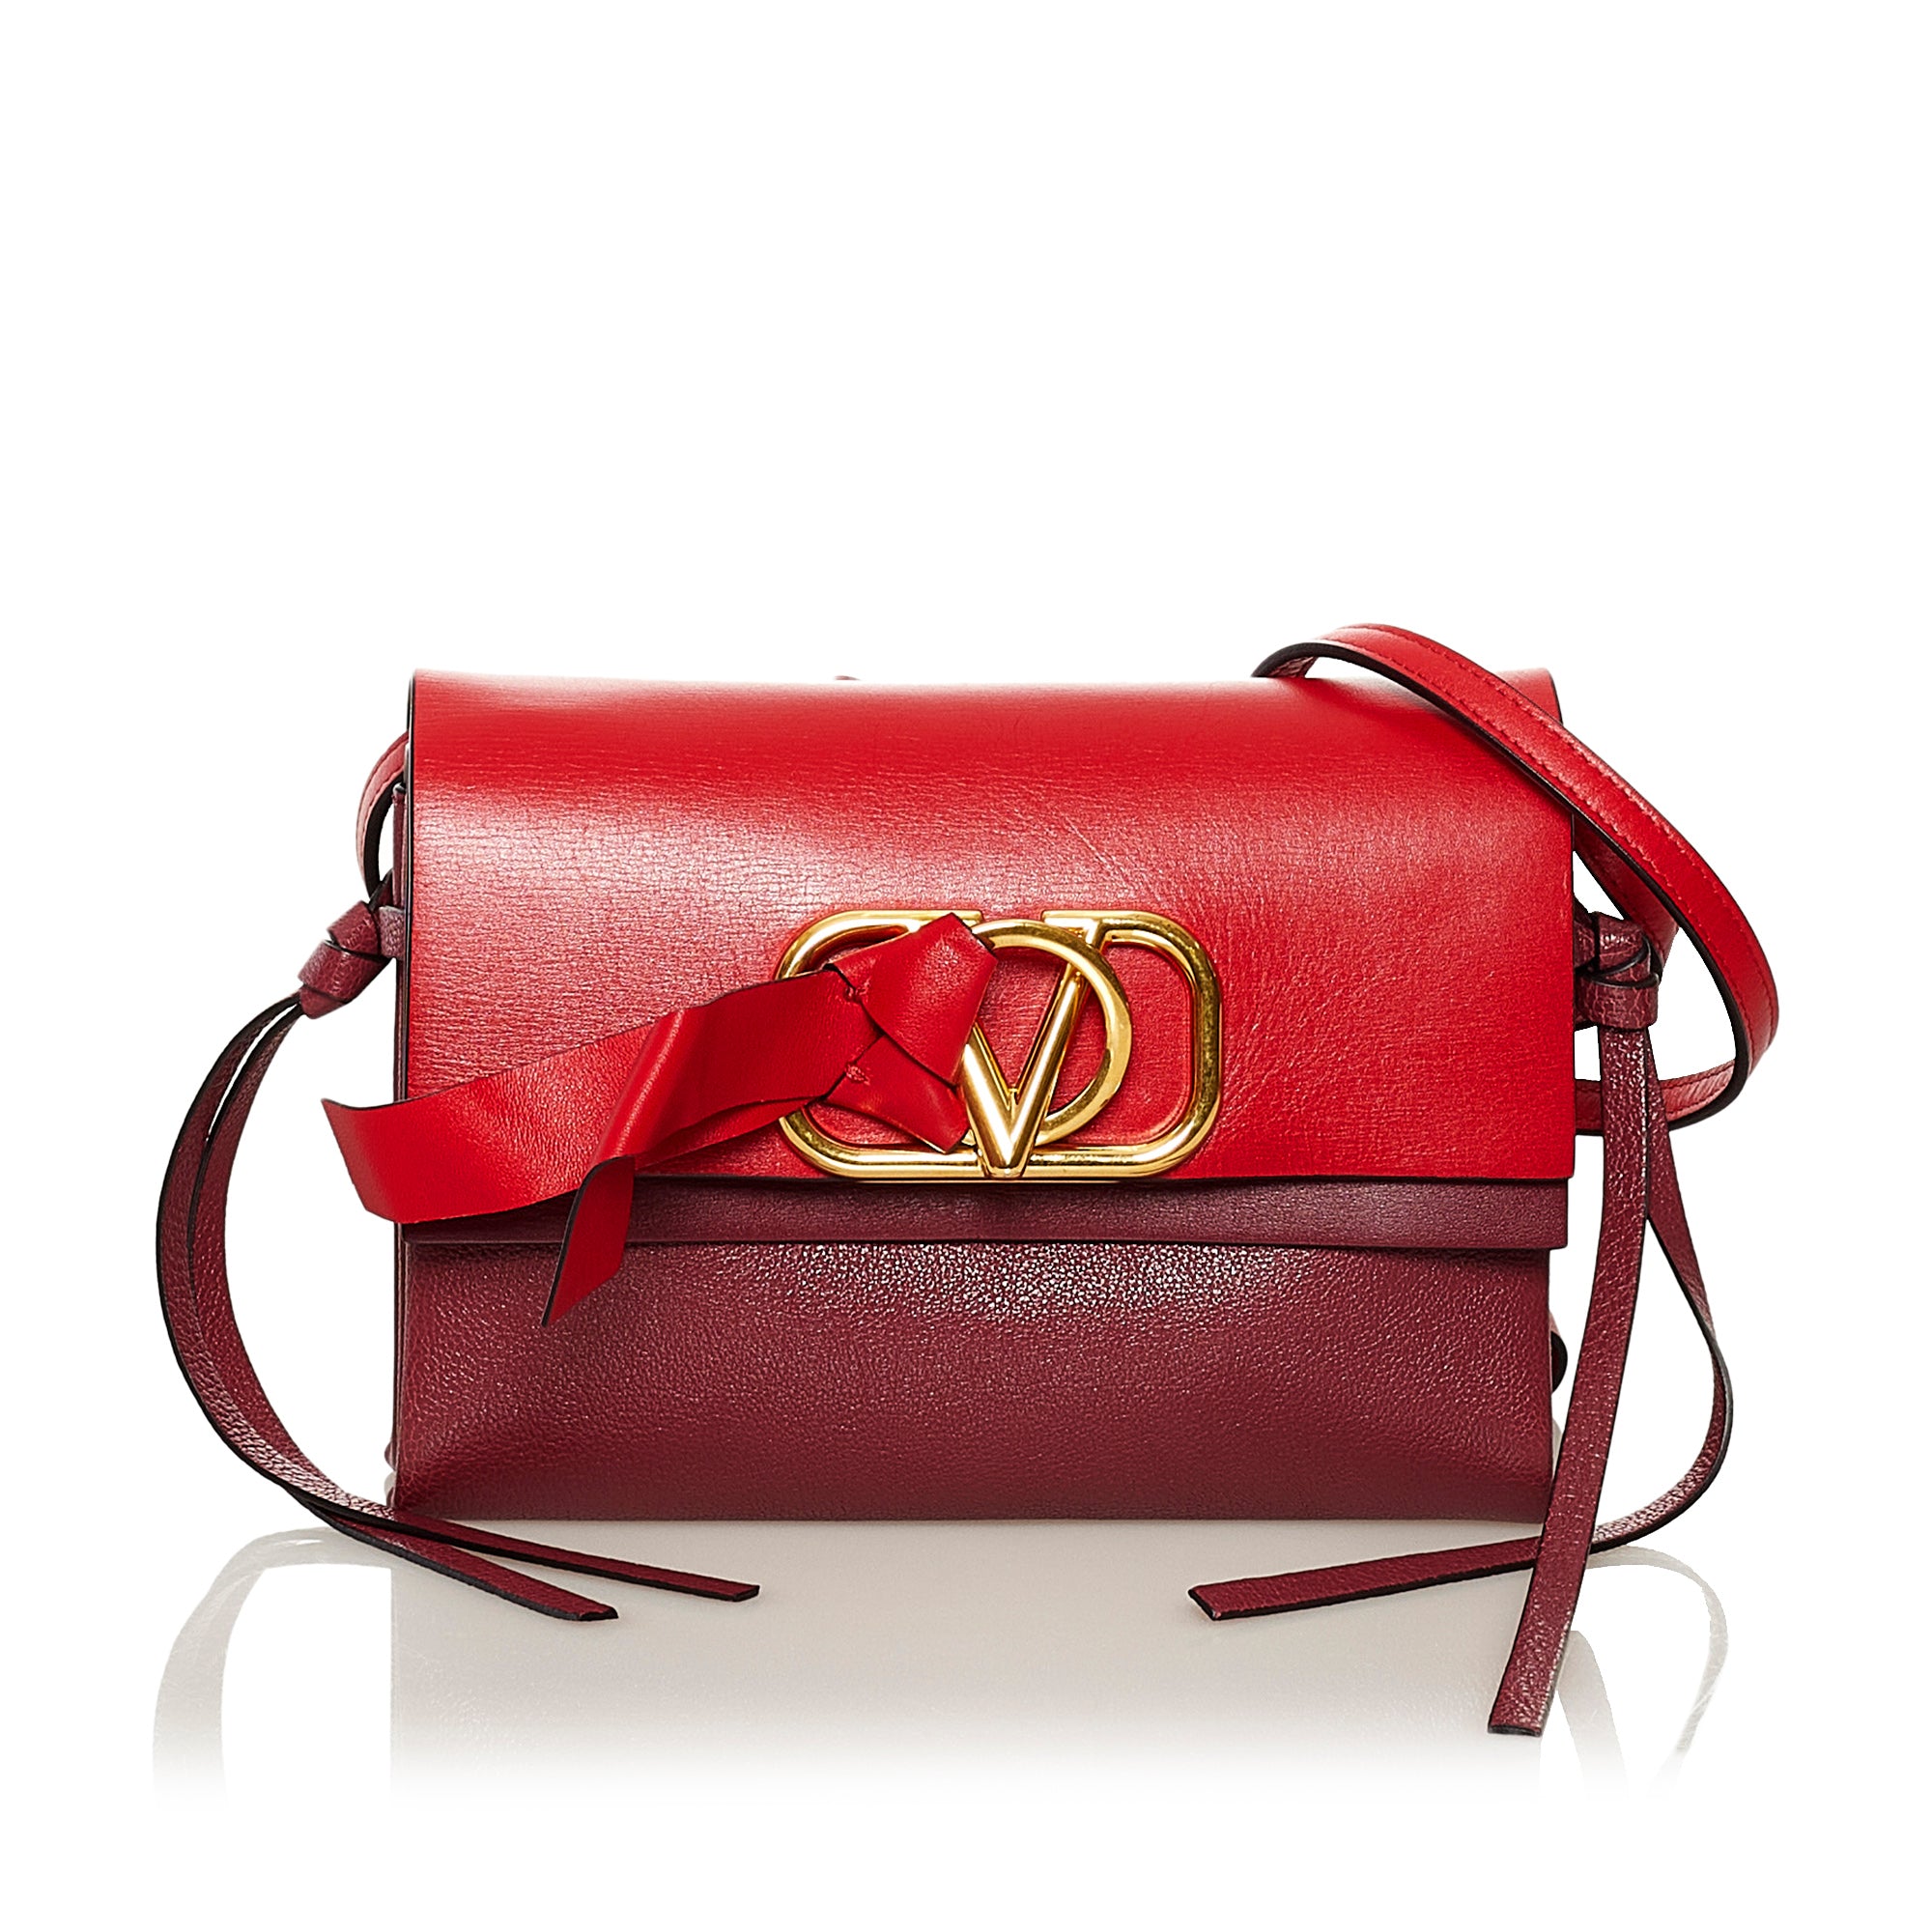 shoulder bag valentino red bag